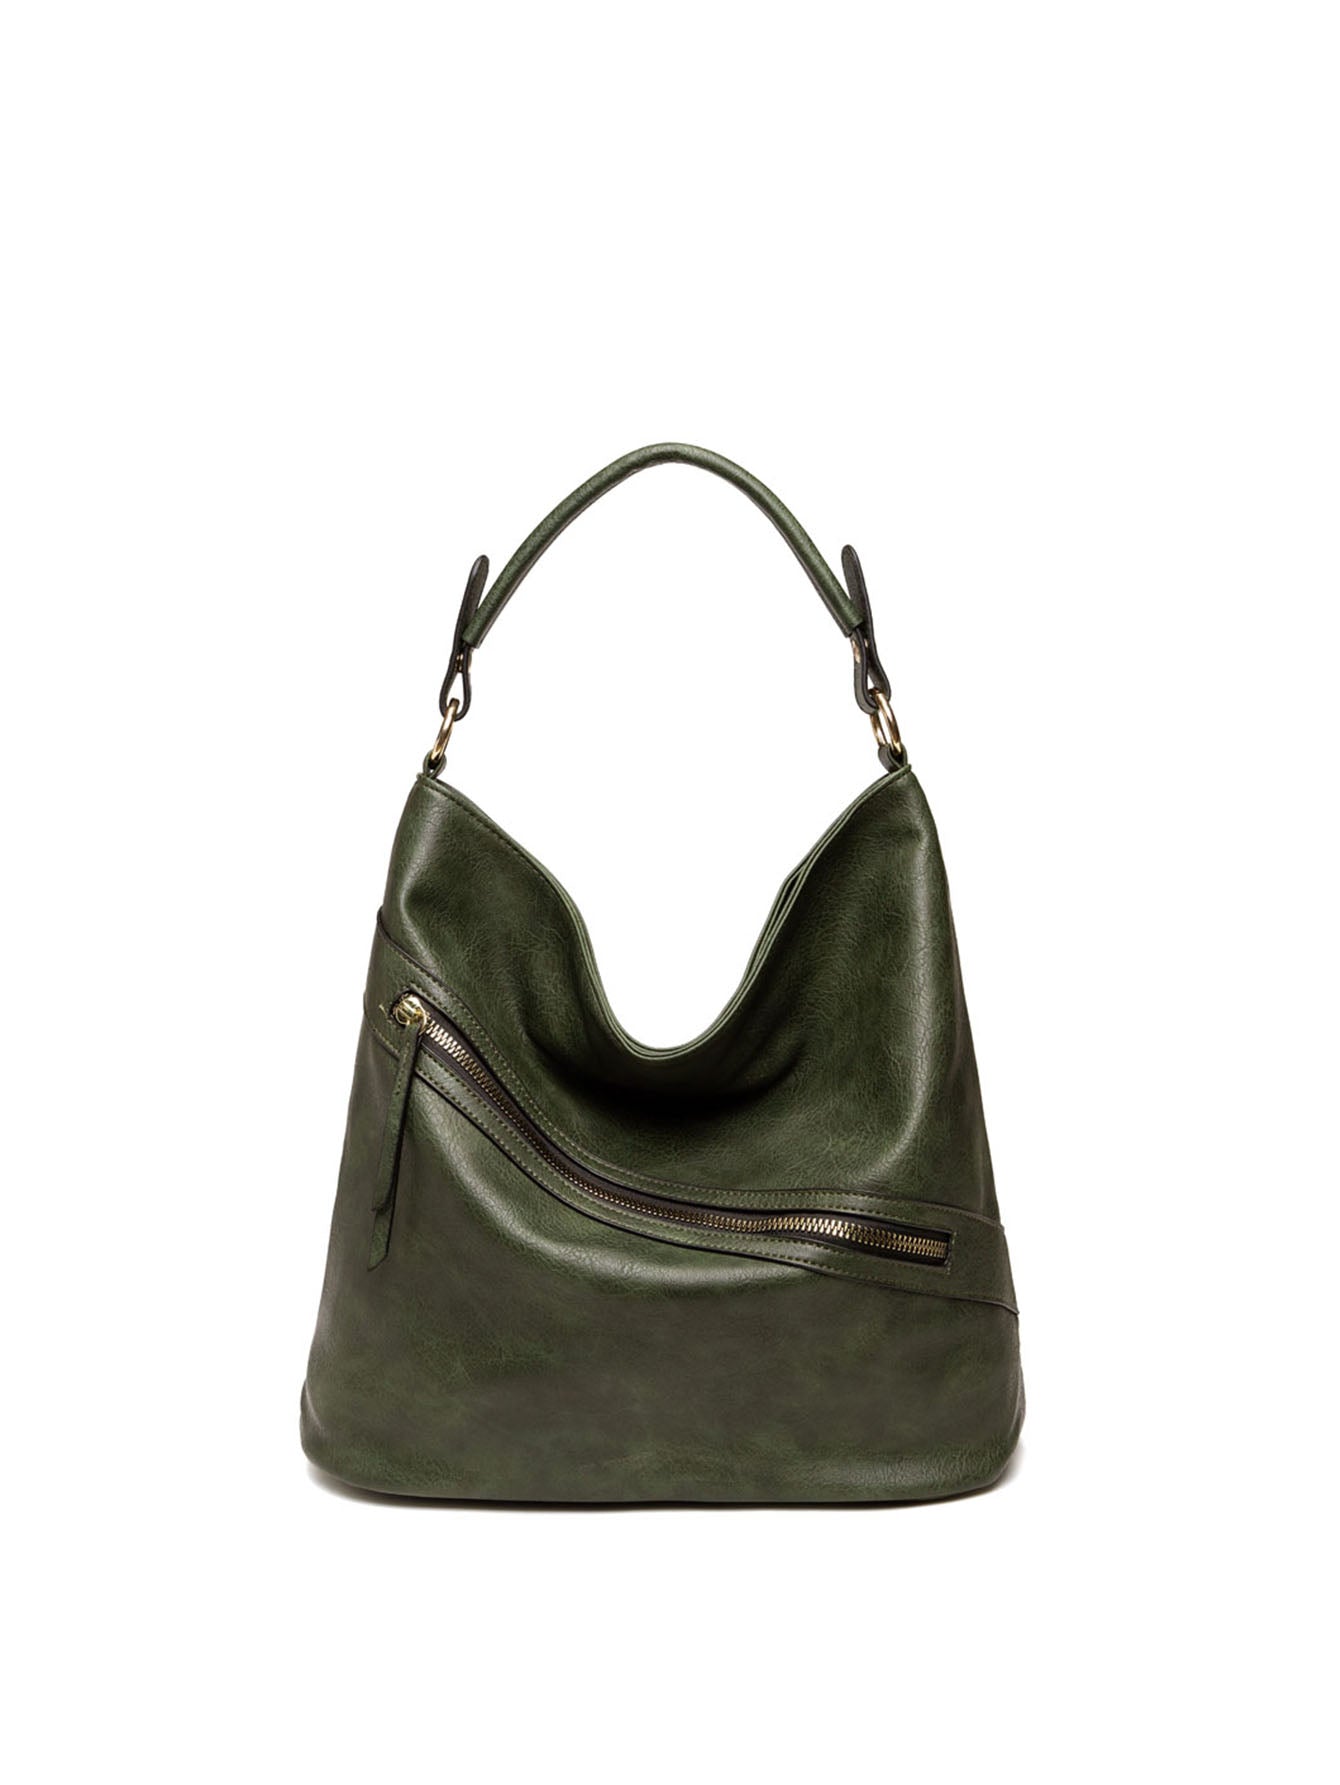 Women Shoulder Handbags Satchel Top Handle Bag Large Capacity Tote Bag Sai Feel